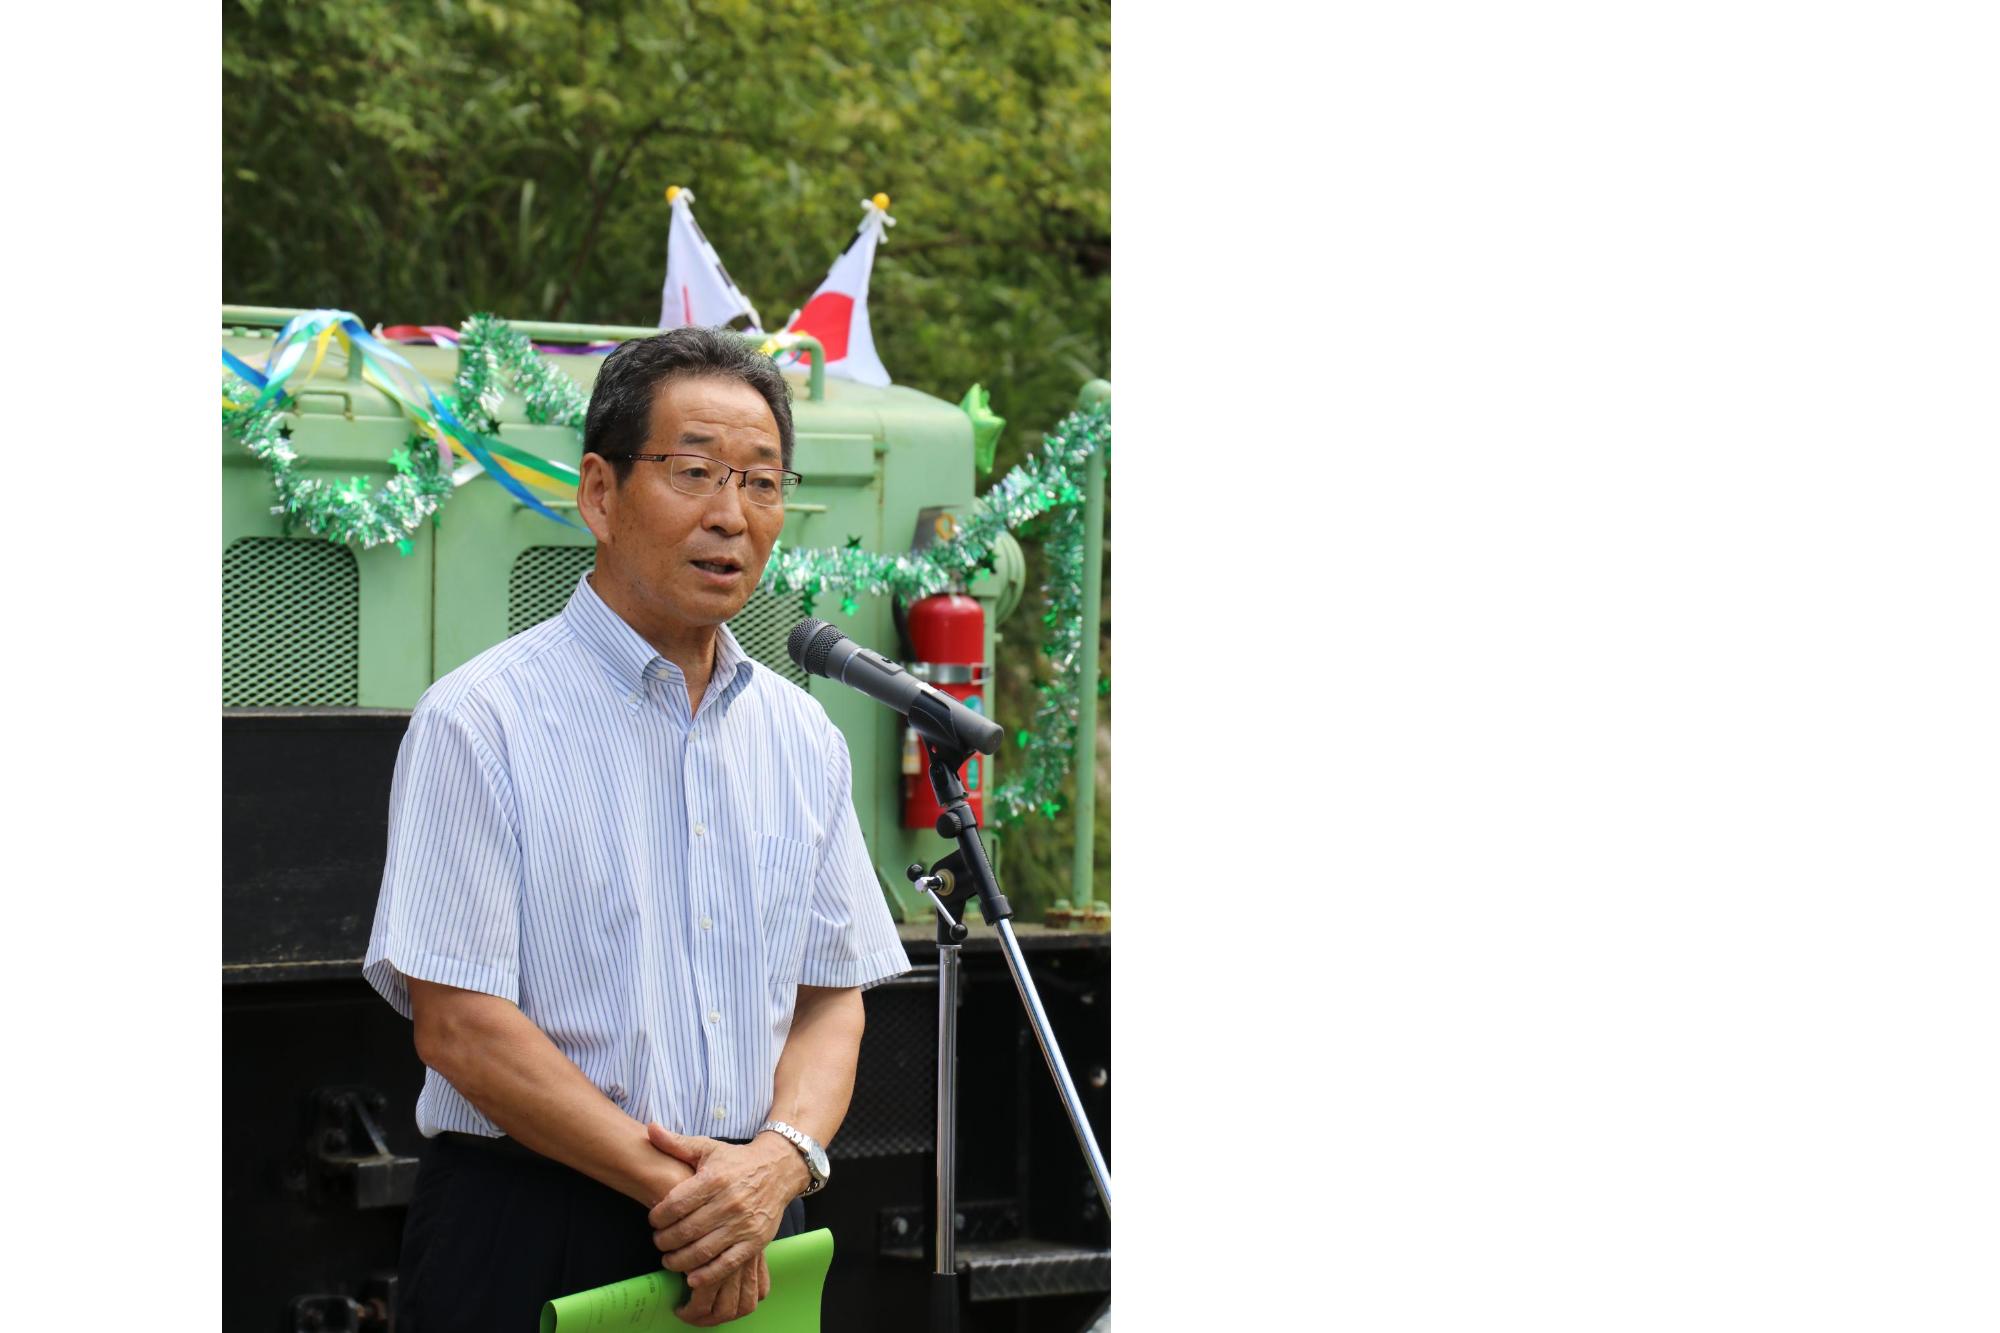 波賀森林鉄道周回コース完成式典であいさつを述べる福元市長の写真